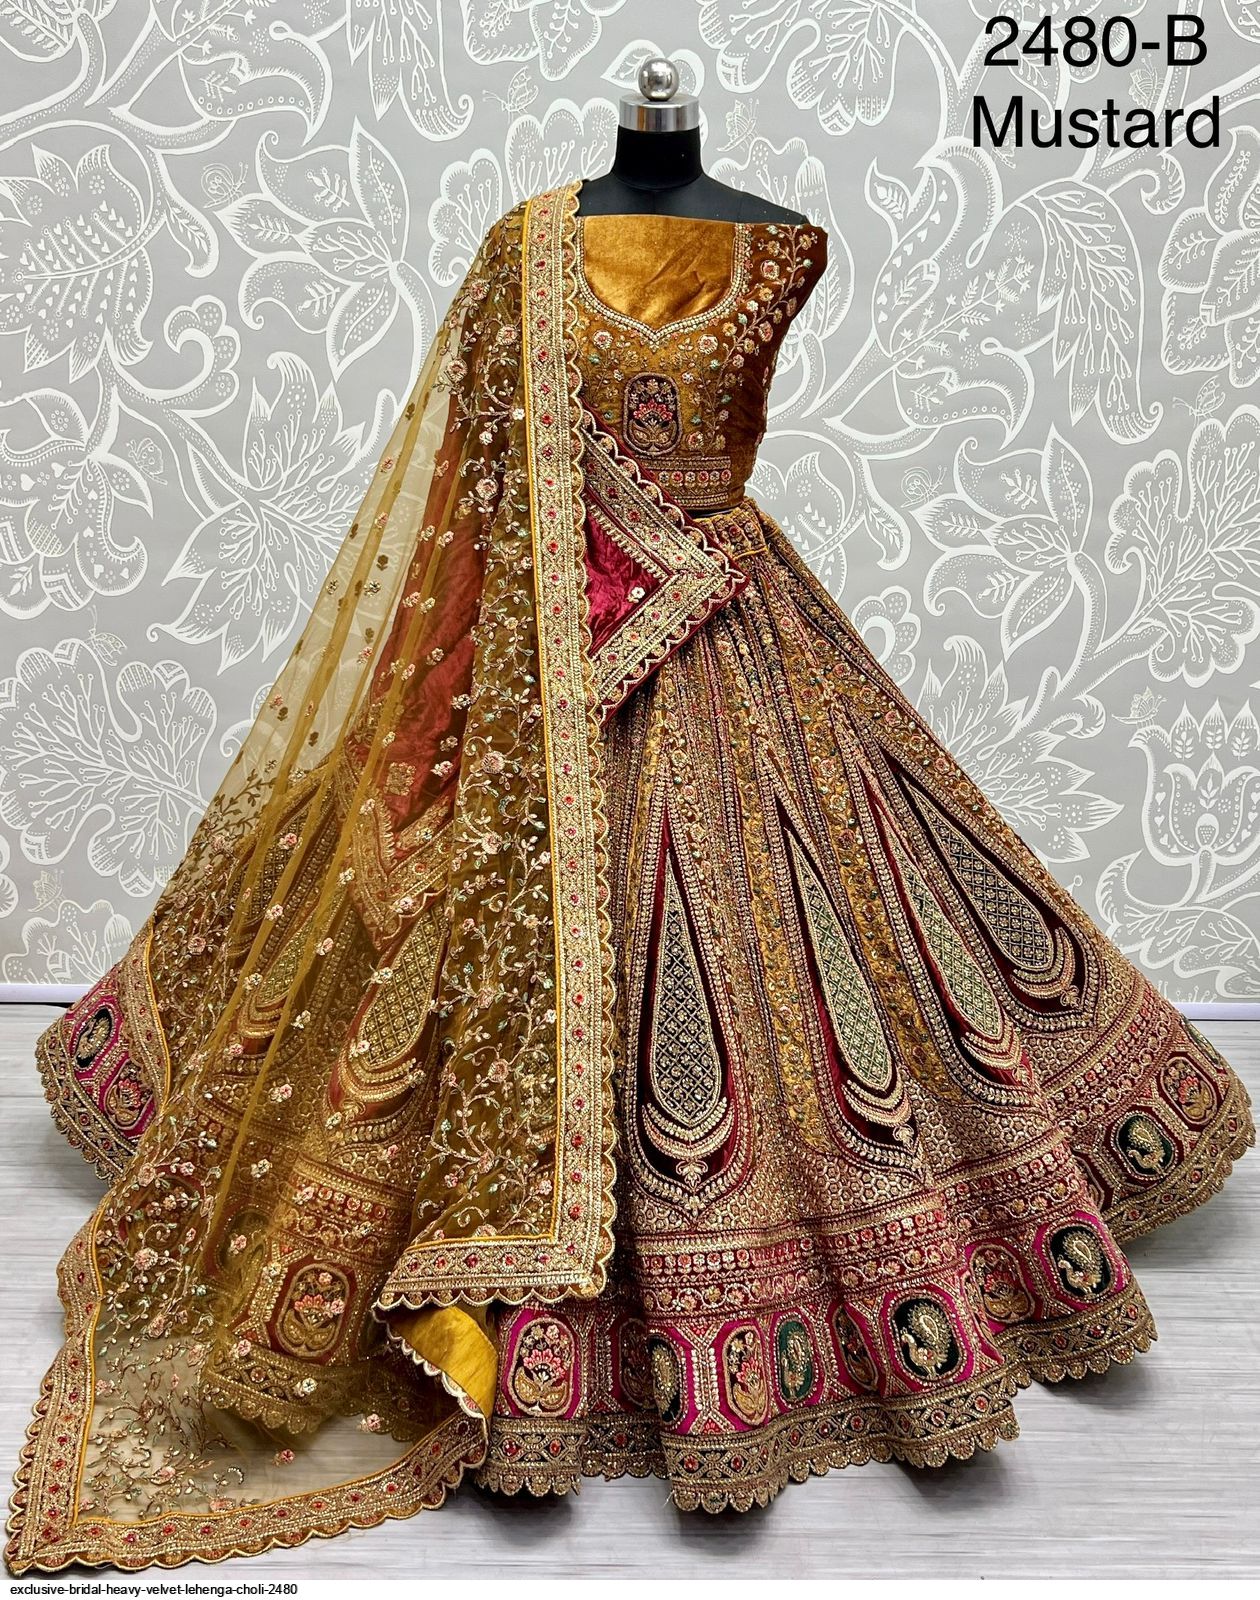 Tamannah in Sabyasachi - South India Fashion | Indian fashion dresses,  Fashion, Indian wedding outfits